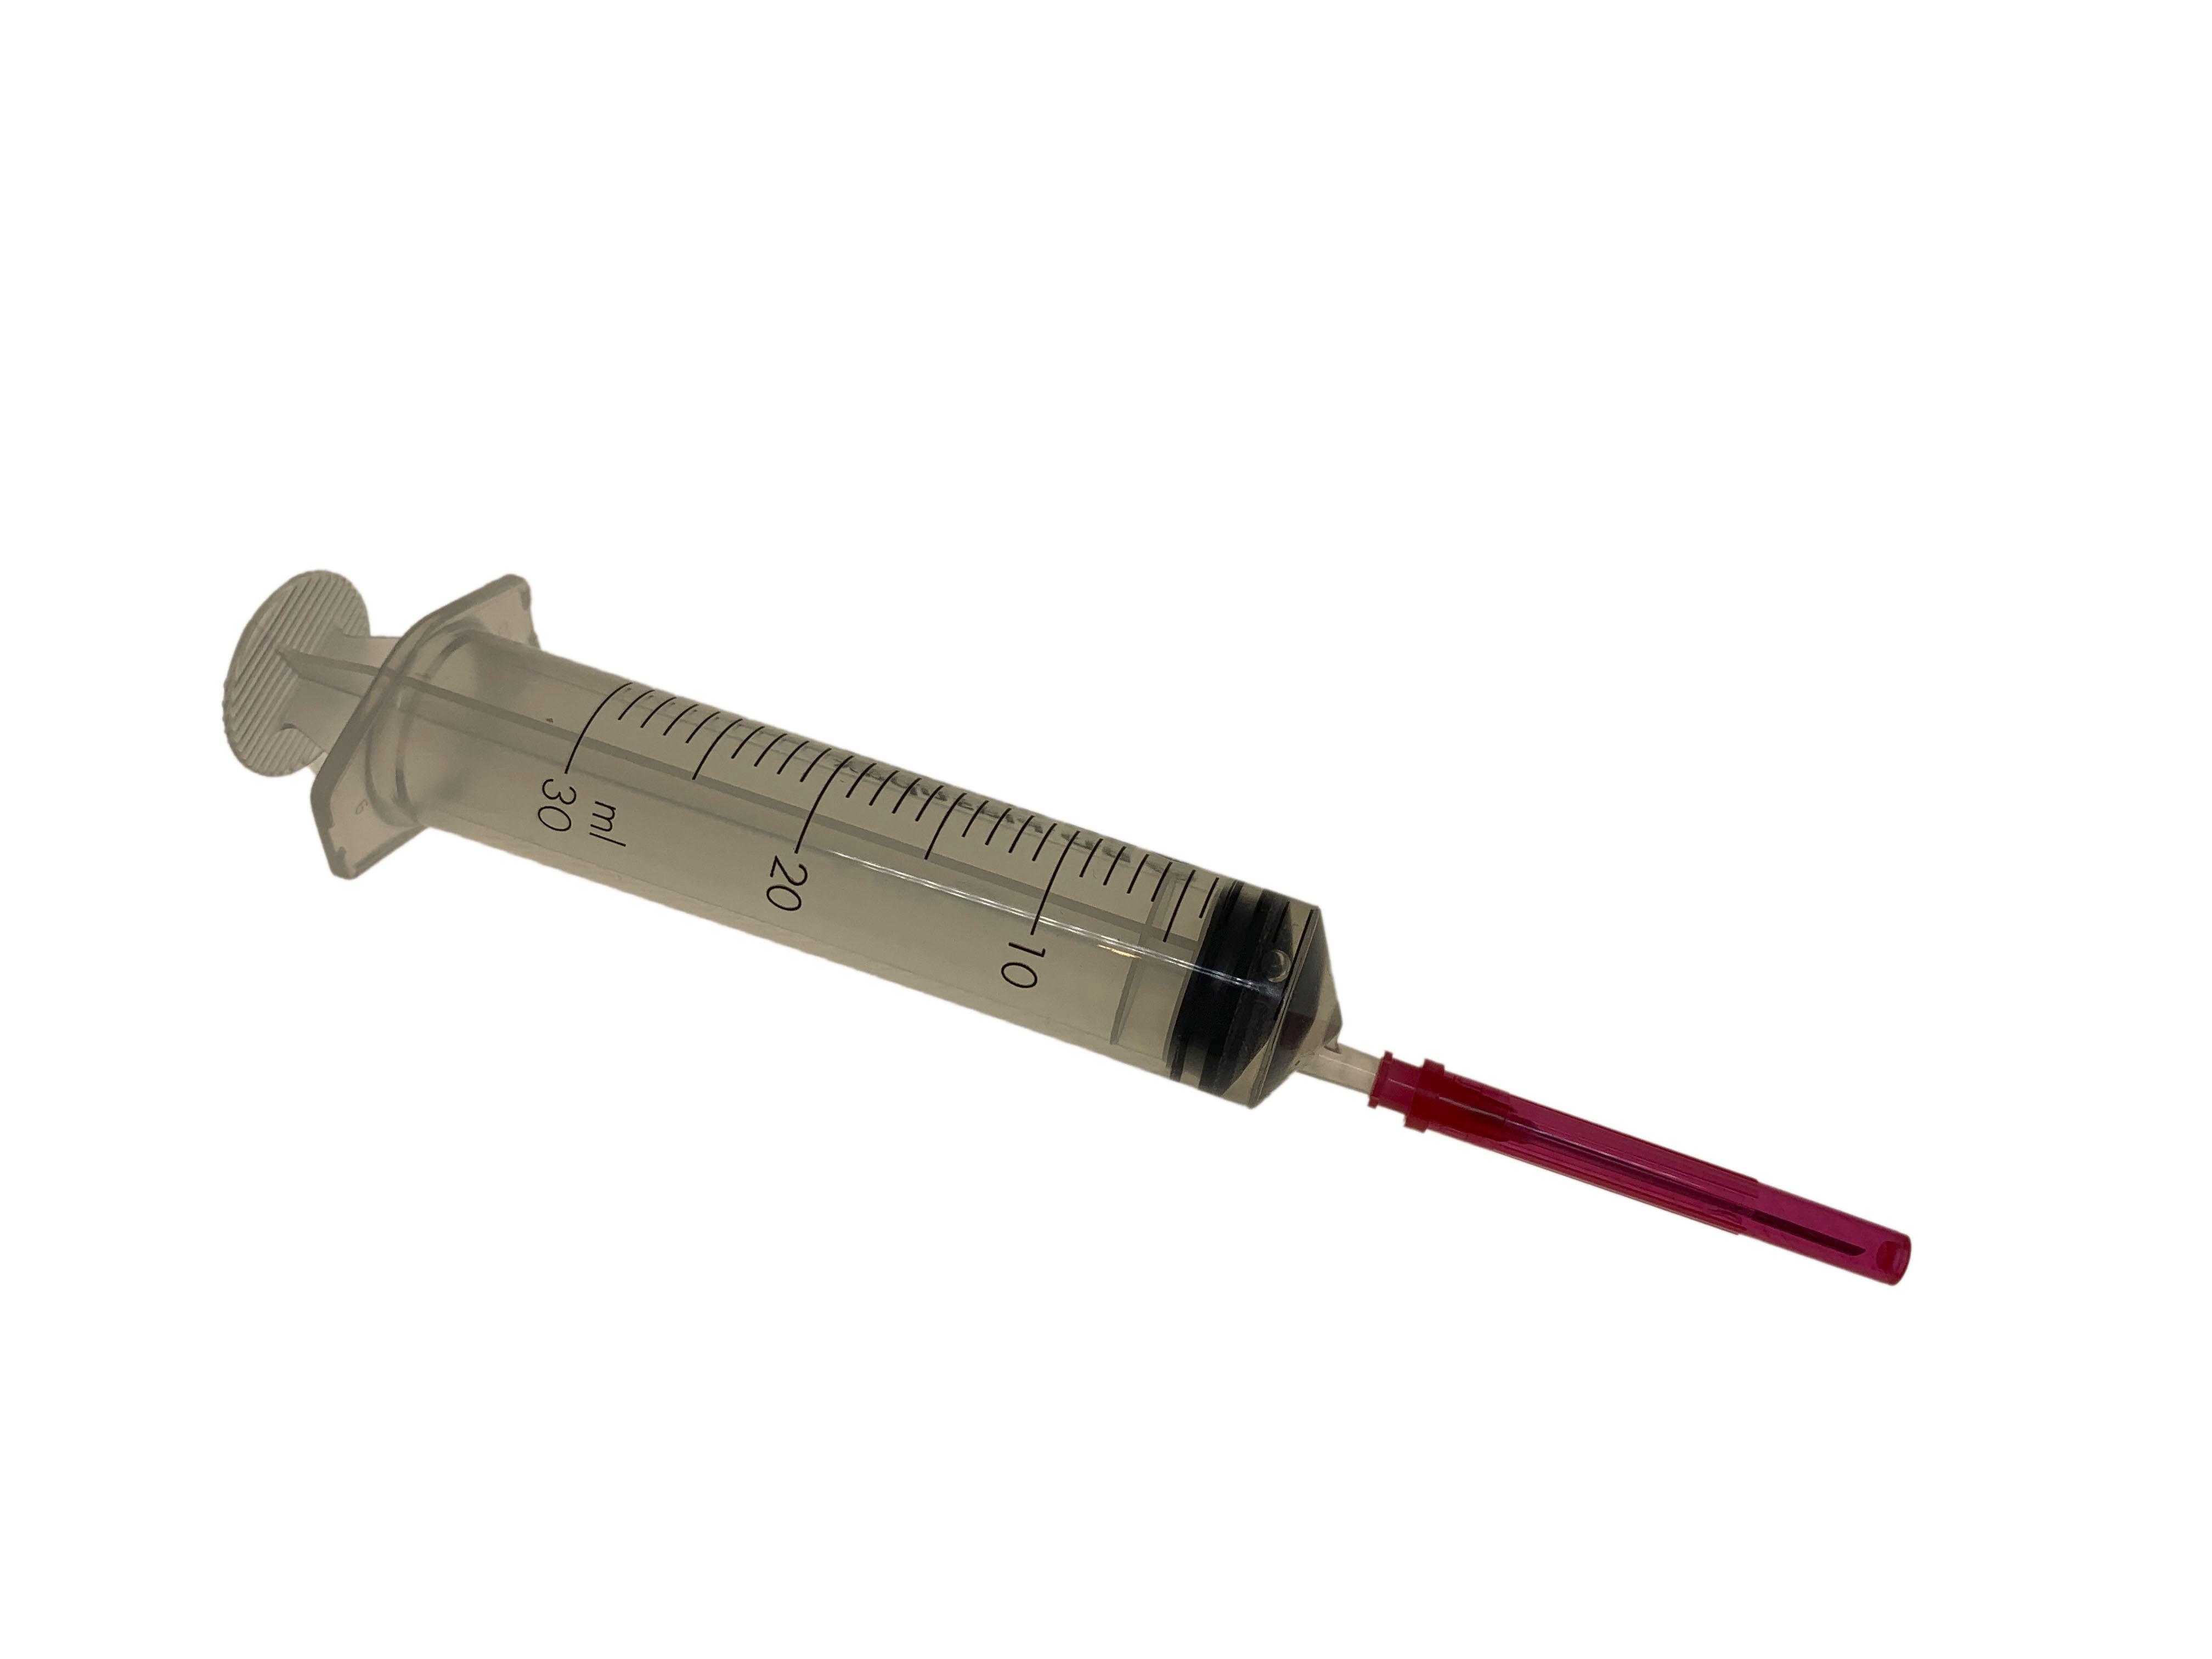 BD Platispack 30ml Luer slip syringe